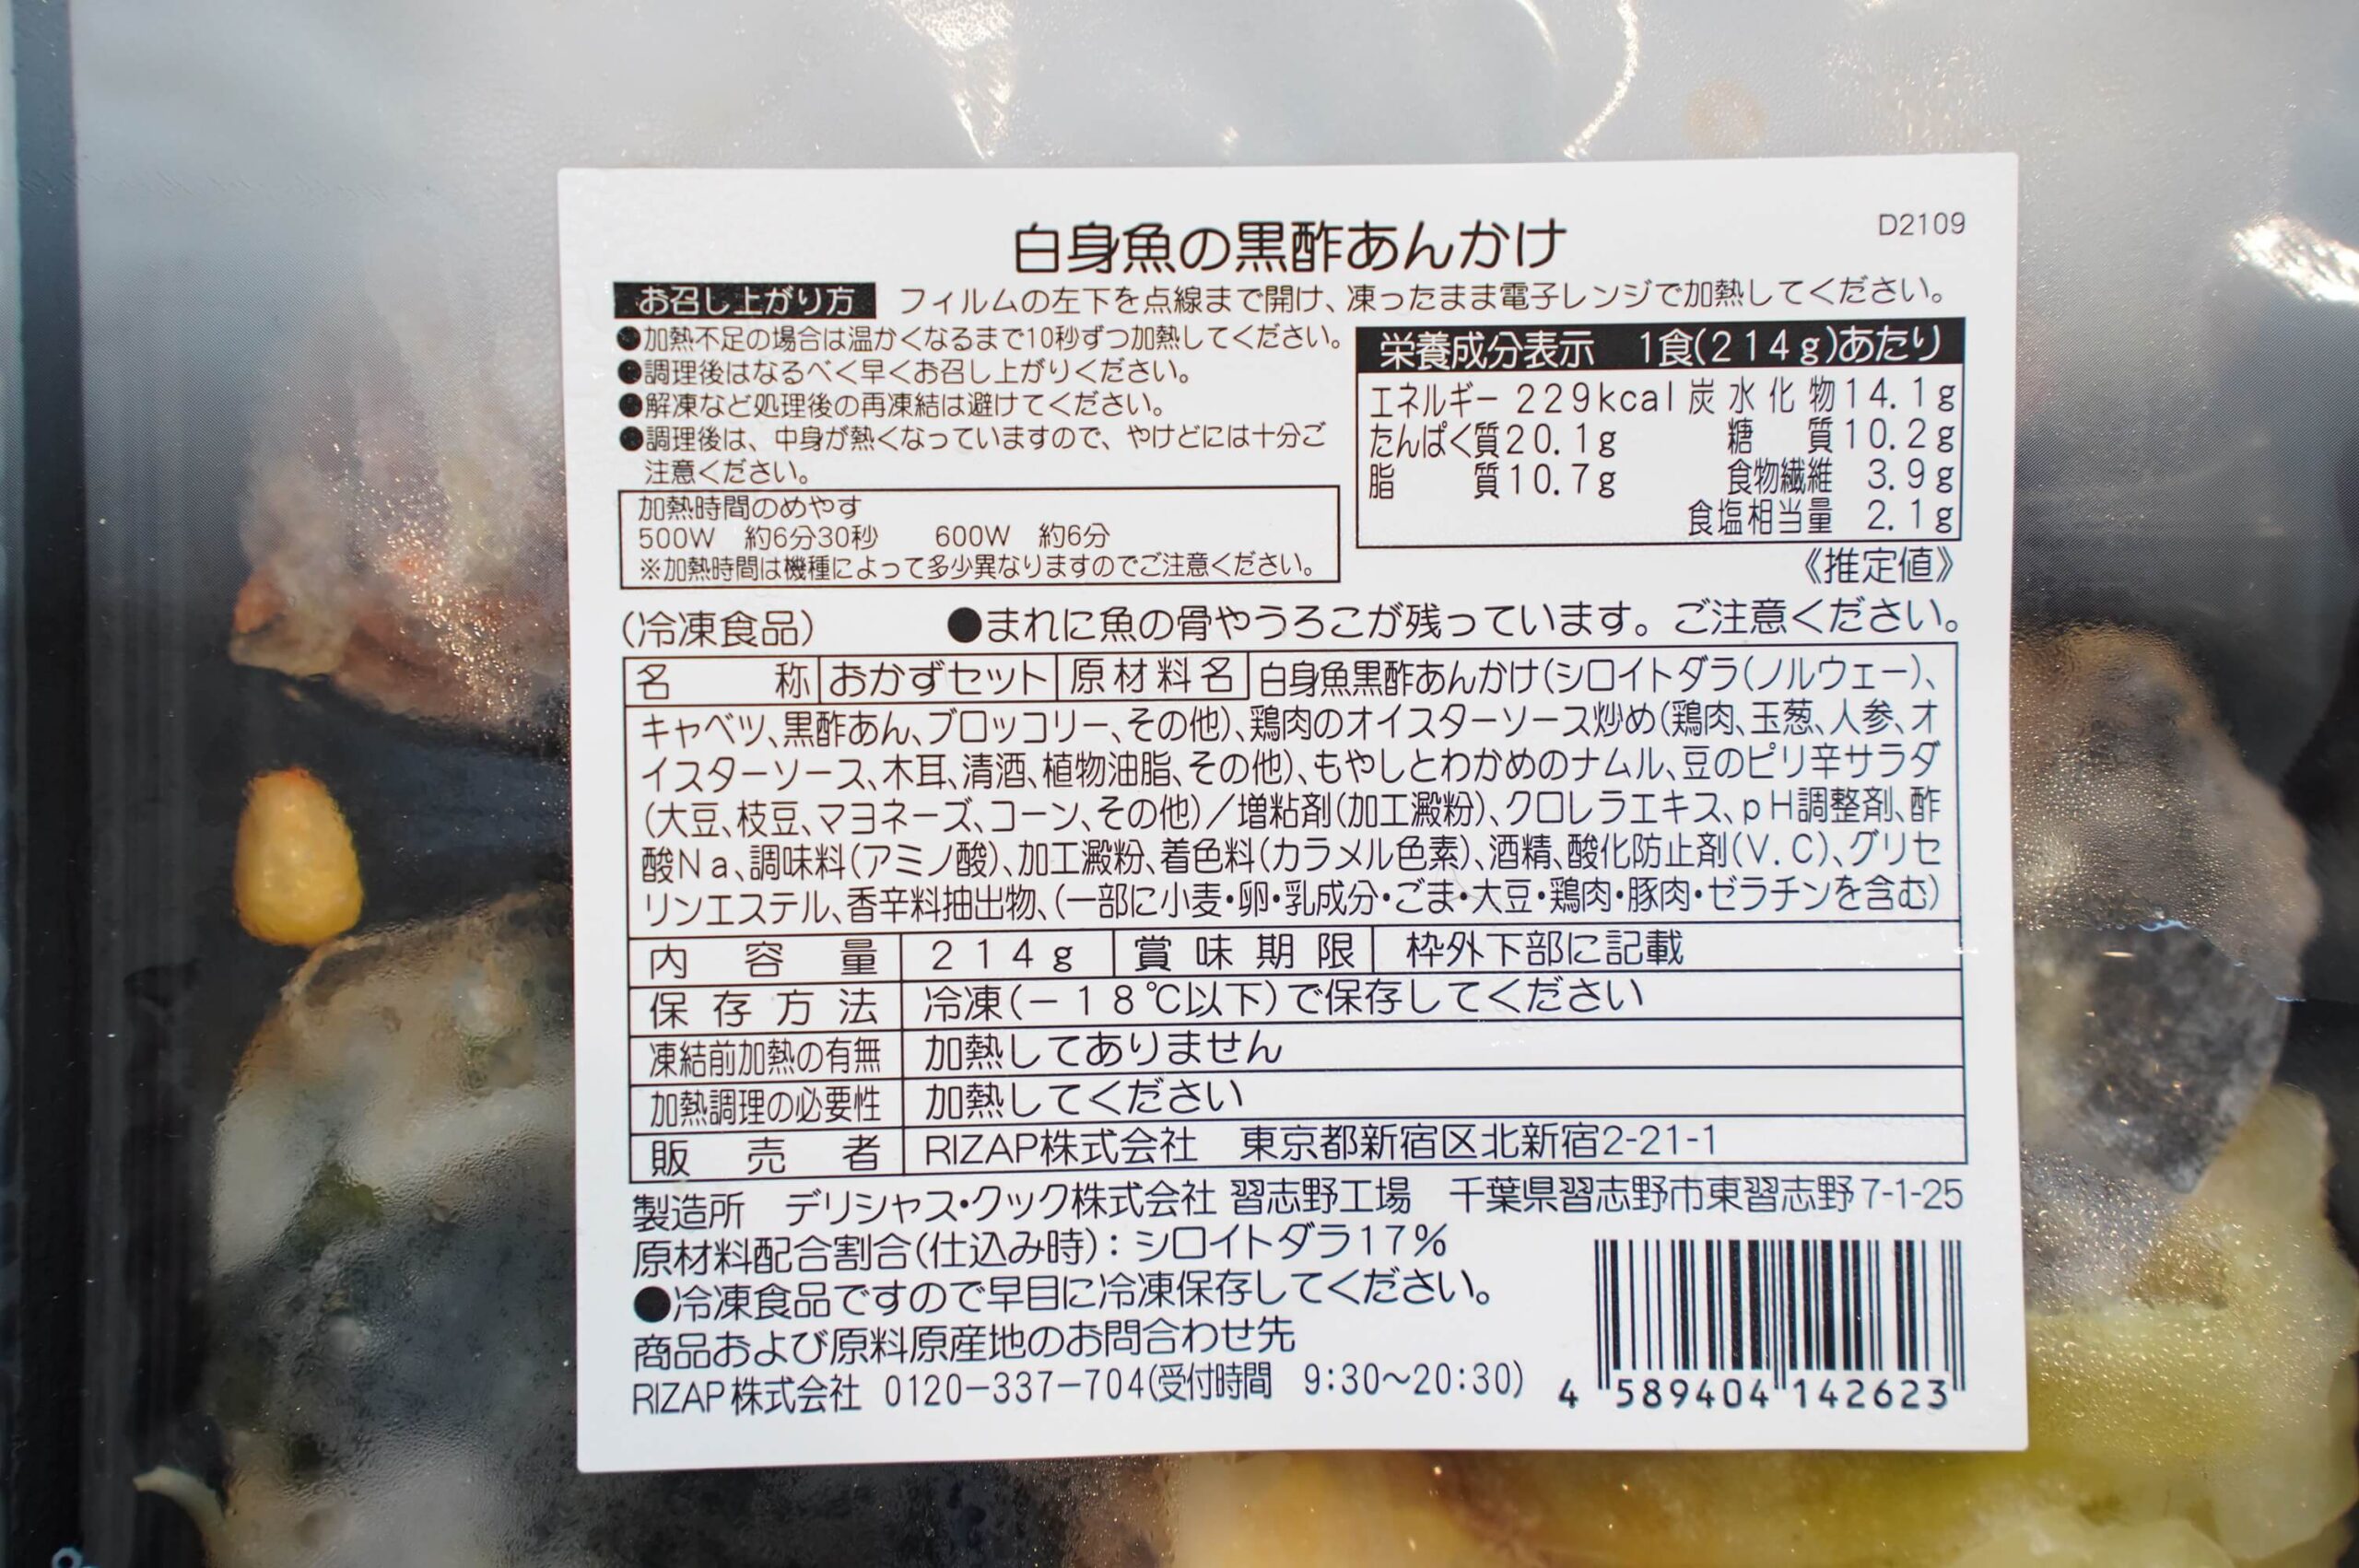 ライザップのサポートミール「白身魚黒酢あんかけ」の栄養成分表の写真